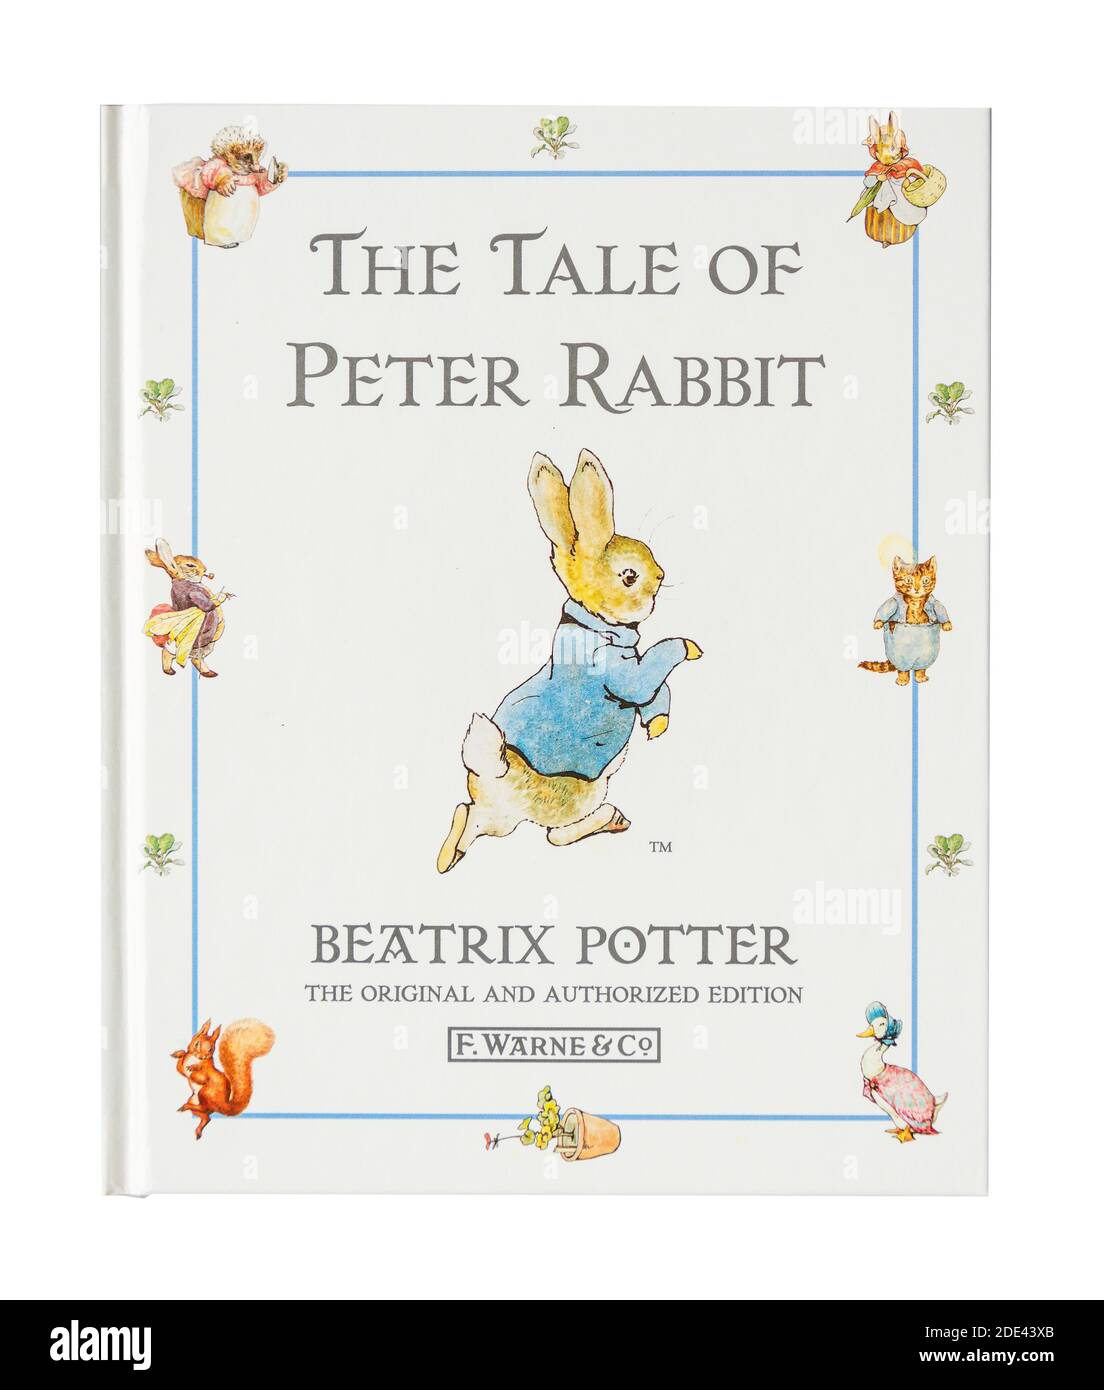 The Tale of Peter Rabbit, livre pour enfants de Beatrix Potter, Grand Londres, Angleterre, Royaume-Uni Banque D'Images